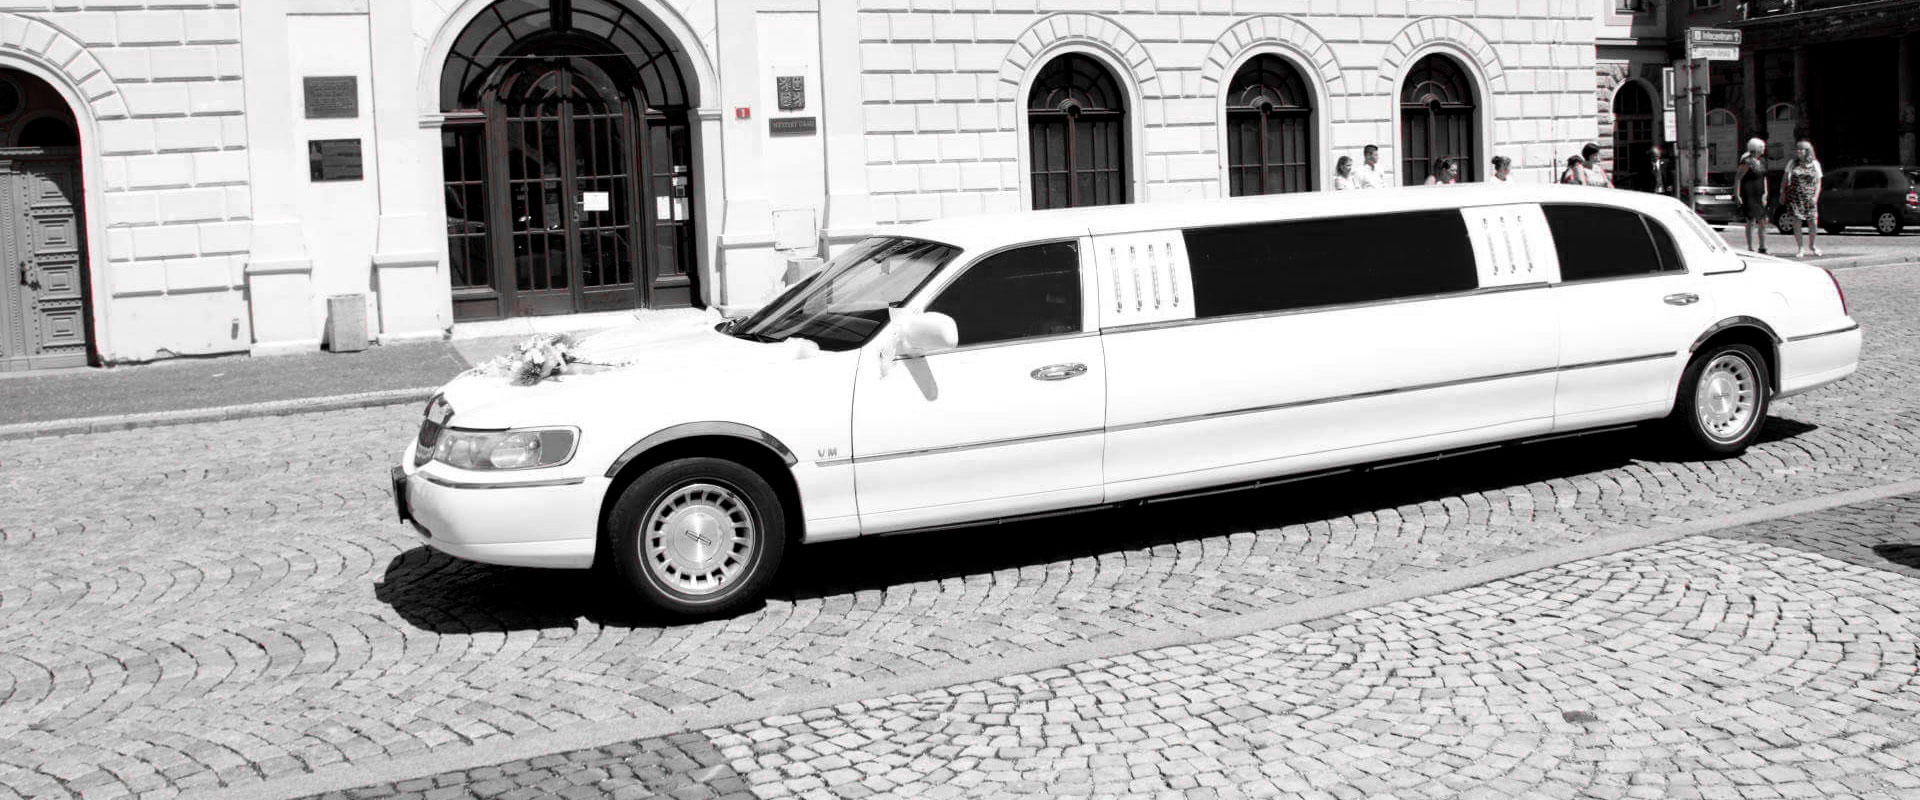 Bíla limuzína vhodná na svatební obřady